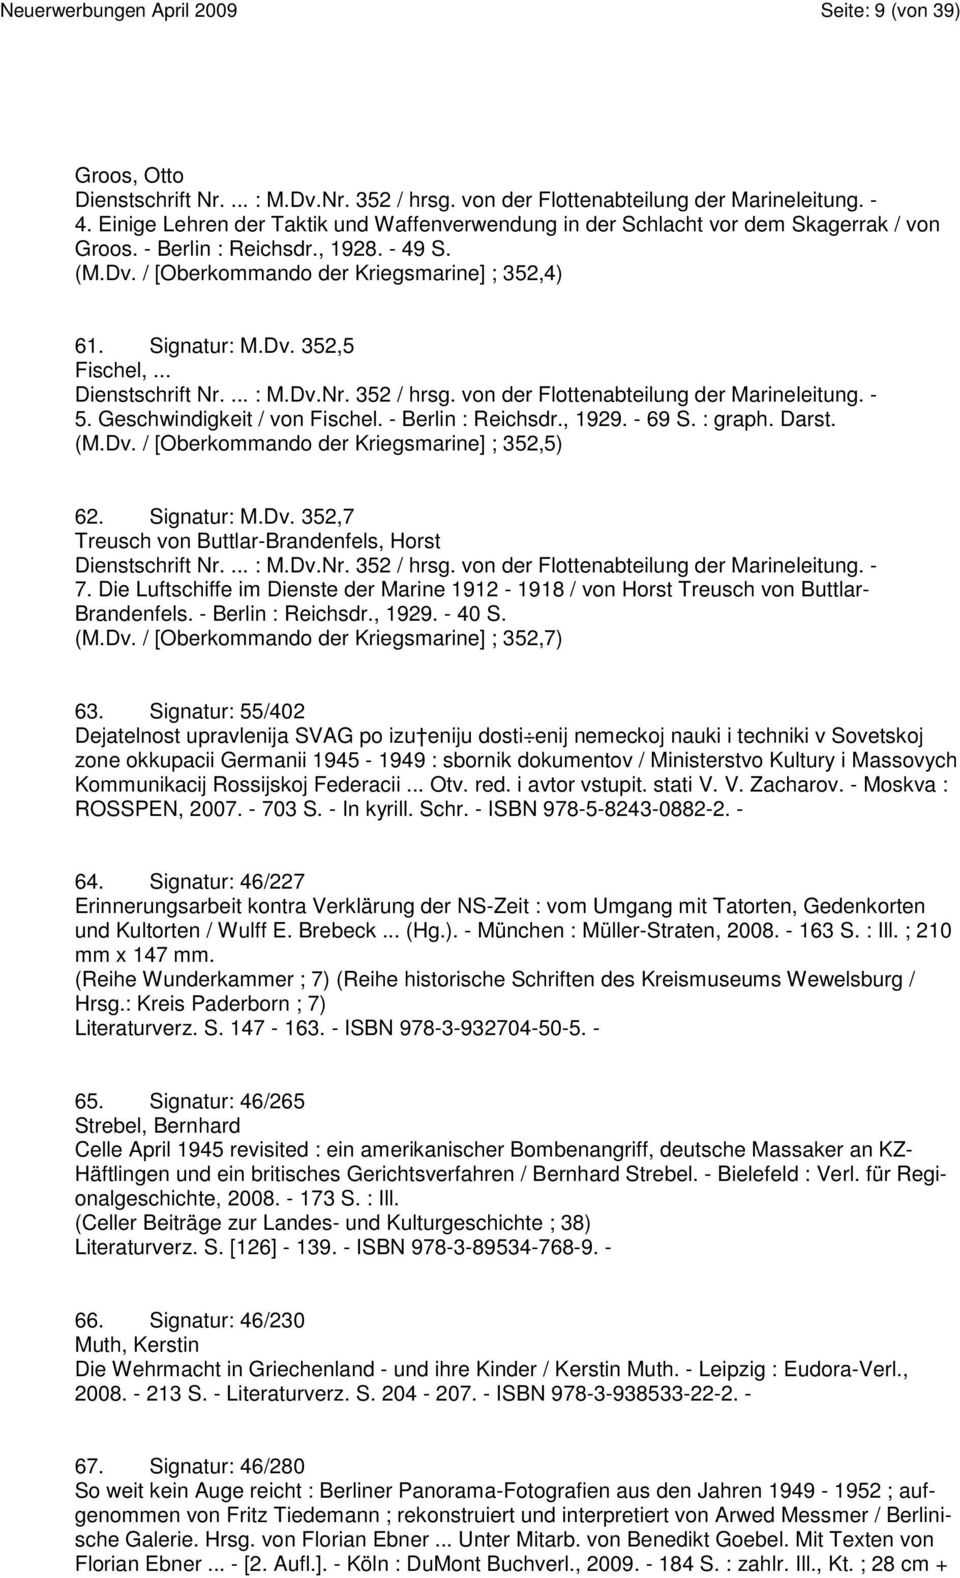 .. Dienstschrift Nr.... : M.Dv.Nr. 352 / hrsg. von der Flottenabteilung der Marineleitung. - 5. Geschwindigkeit / von Fischel. - Berlin : Reichsdr., 1929. - 69 S. : graph. Darst. (M.Dv. / [Oberkommando der Kriegsmarine] ; 352,5) 62.